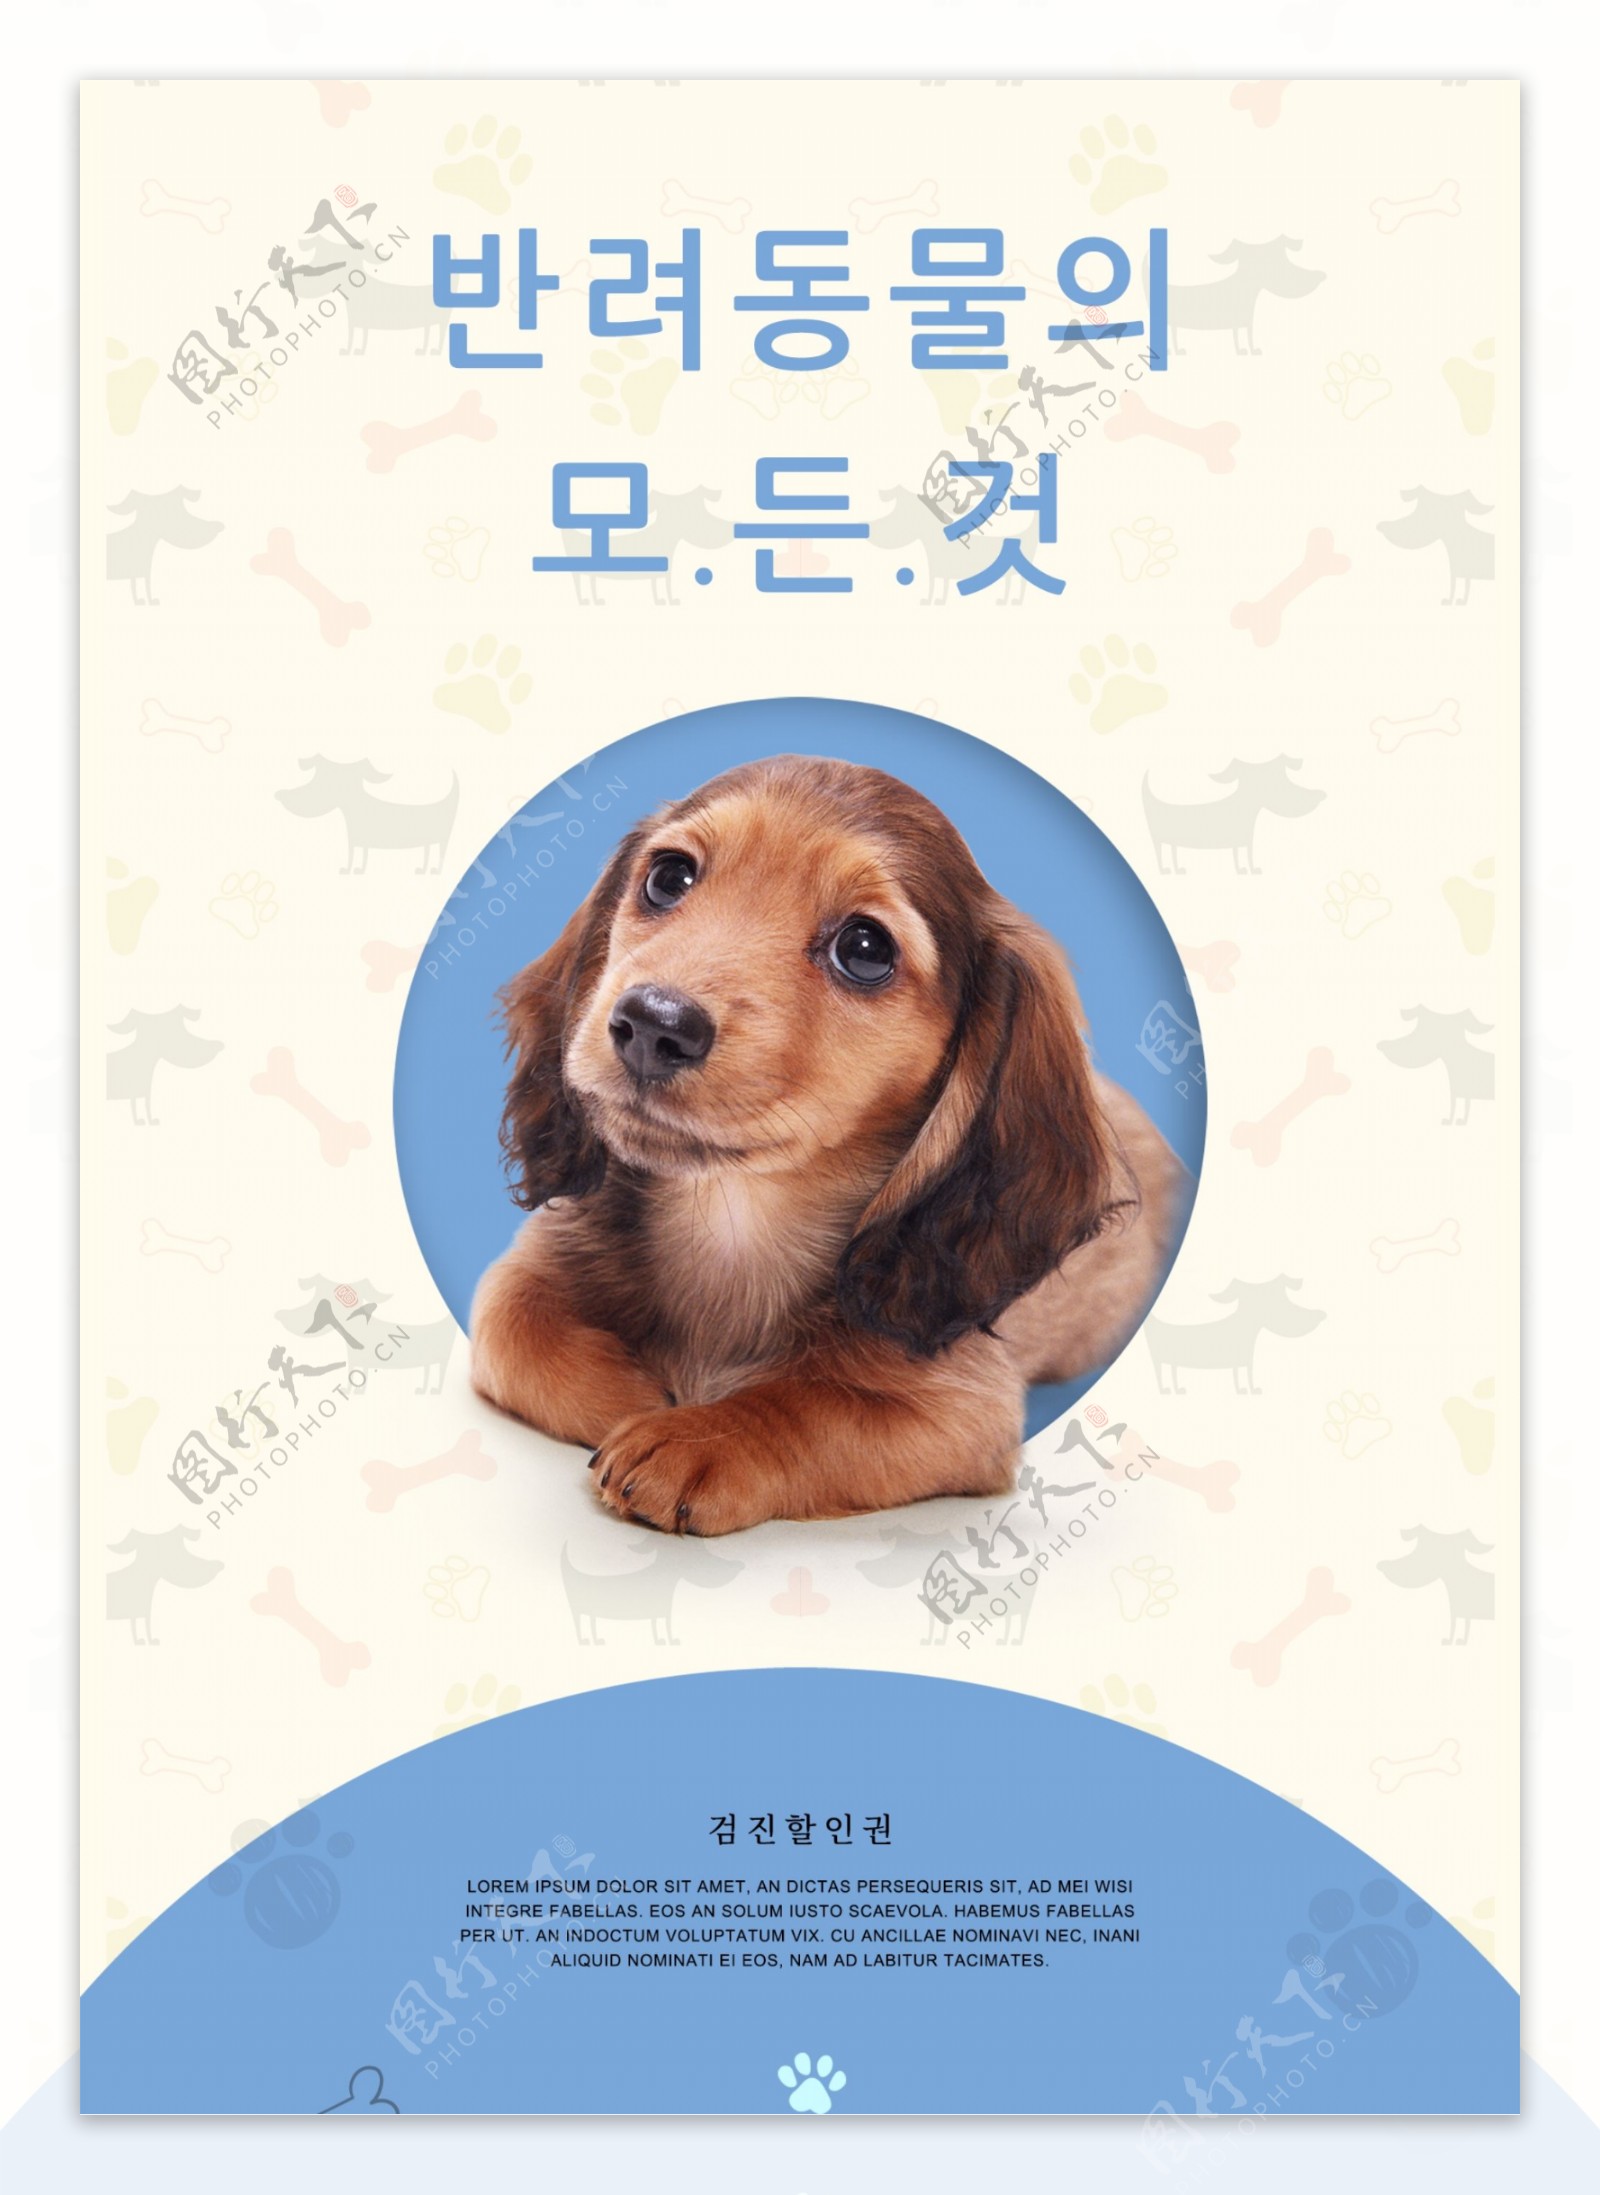 新鲜和简单的宠物店宣传海报